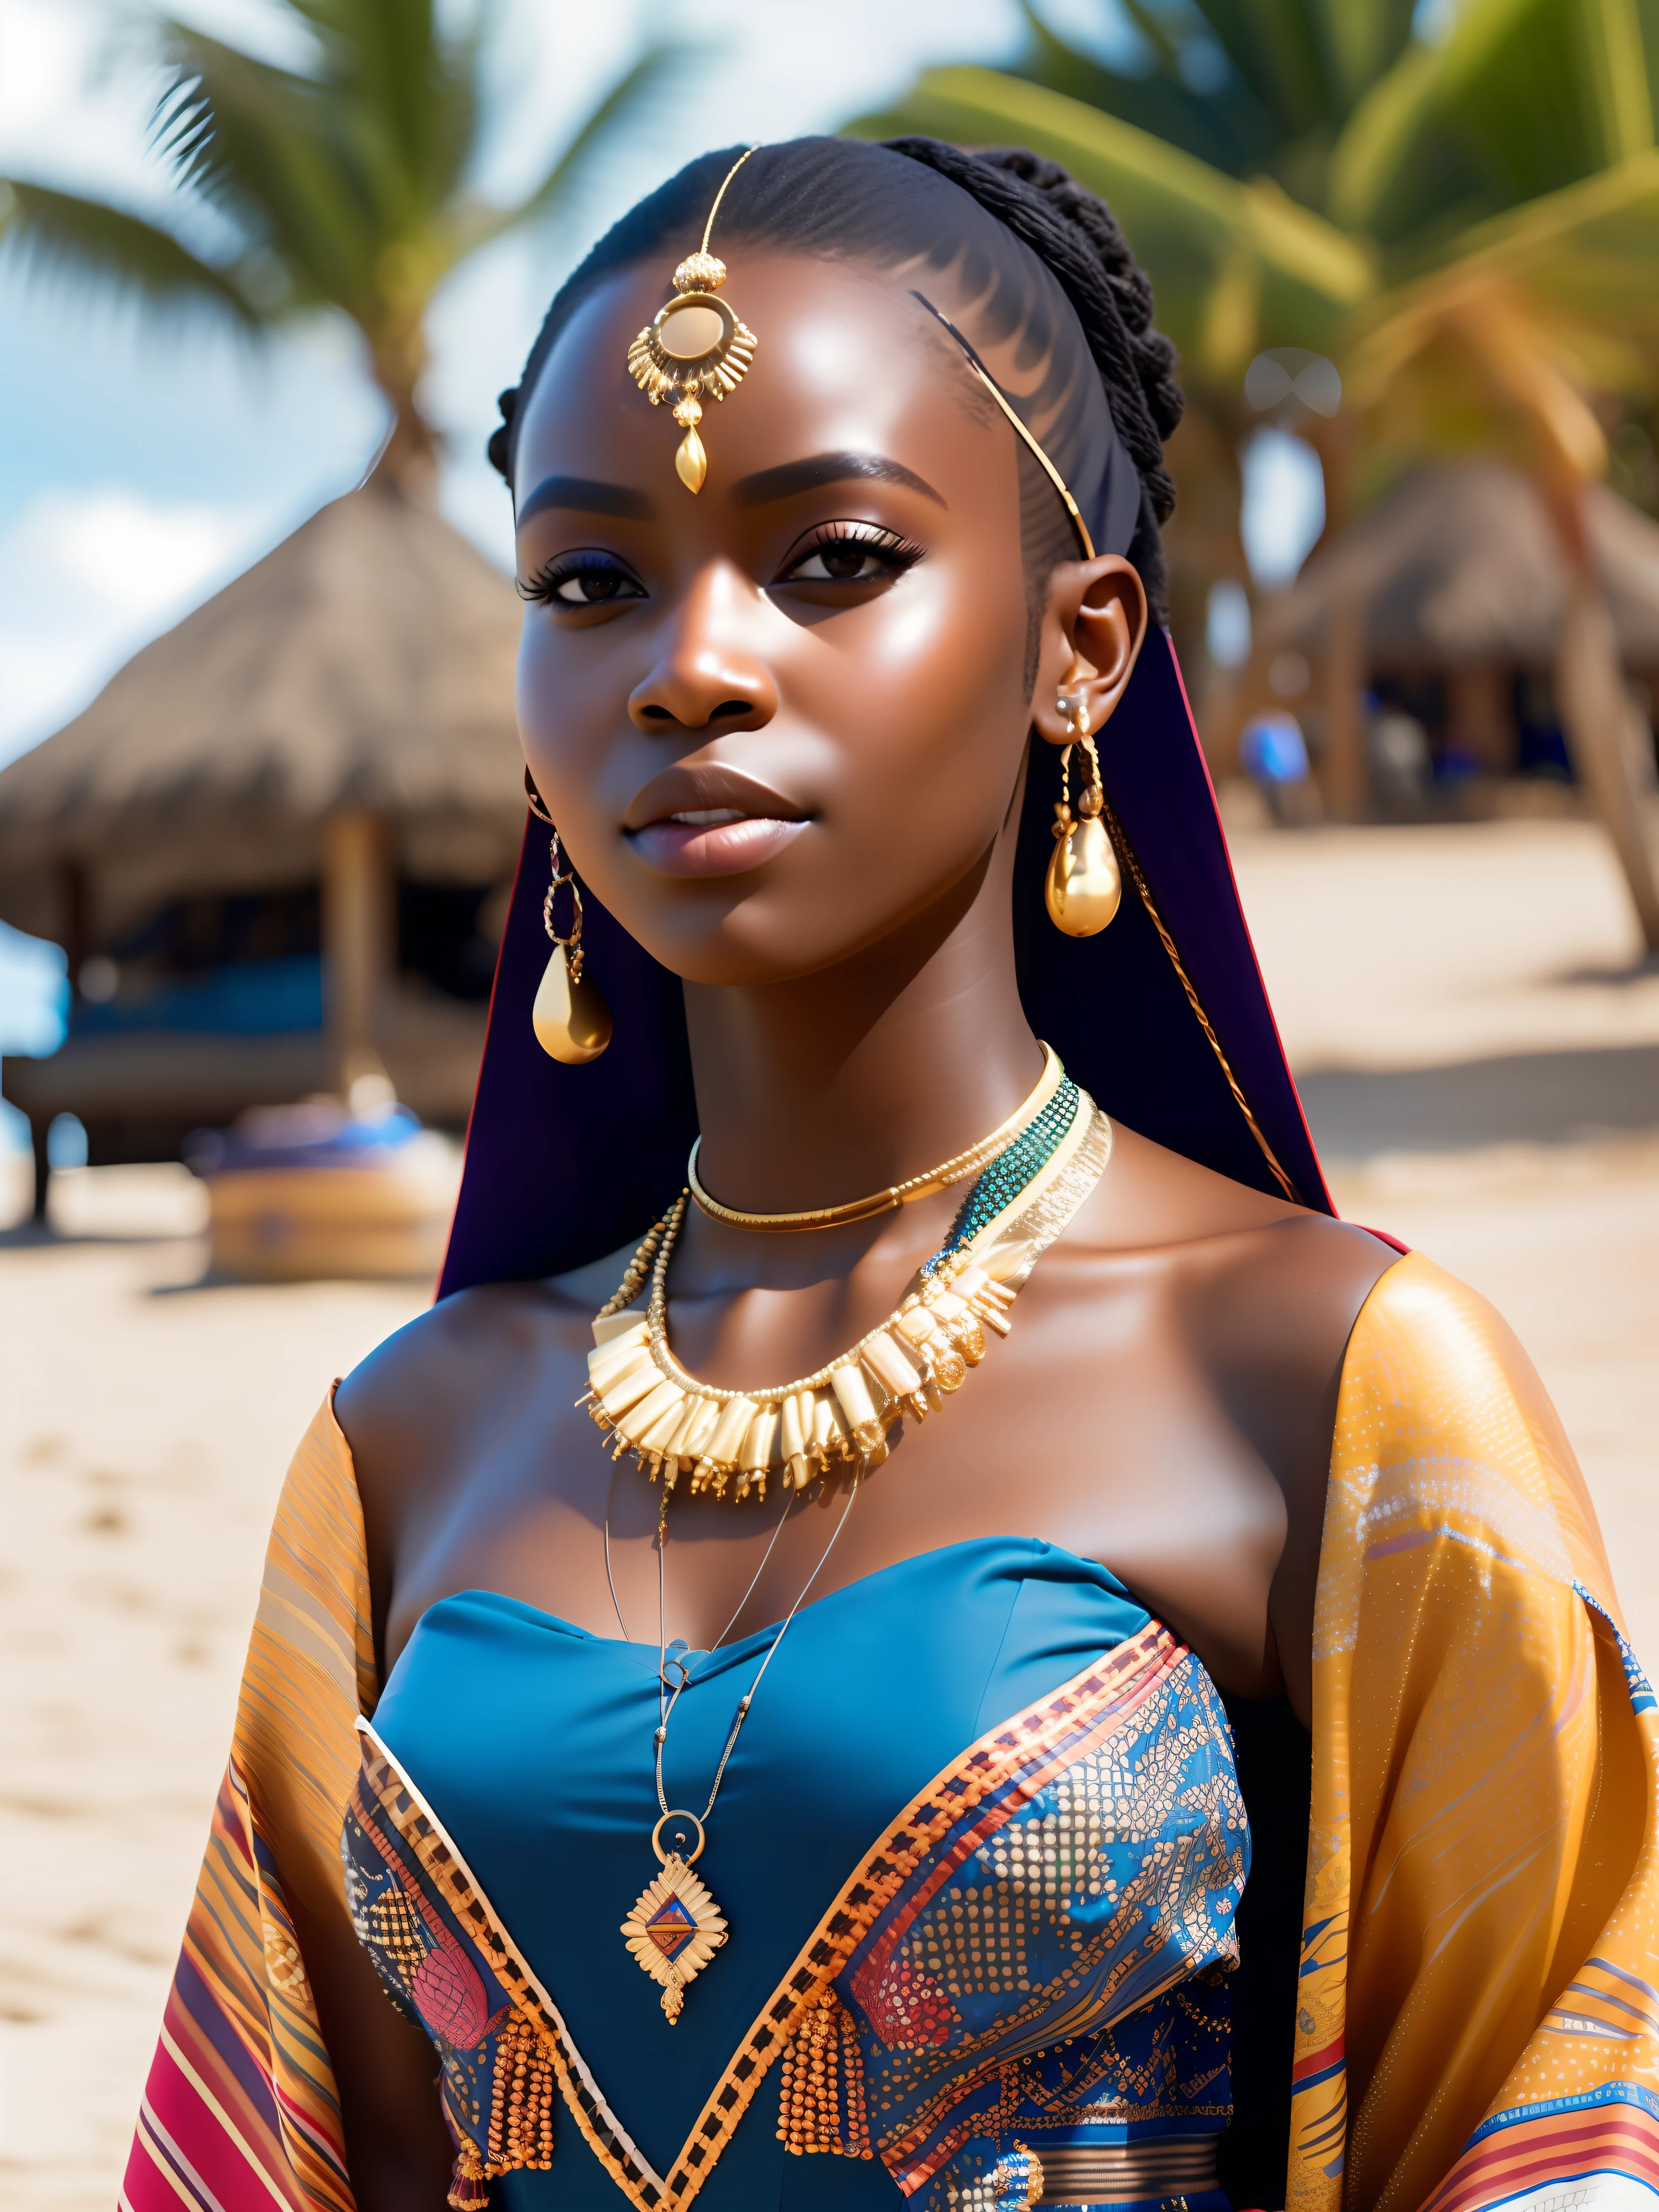 クソッ_SF, クソッ_SF_v2, ビーチの前にいるとても美しい若いアフリカの女性のポートレート, 豊かなカラフルな服, ゴールデンアフリカジュエリー, 閉じる, 王様のポーズと態度. クソッ_シネマ_v2. クソッ_シネマ_v2